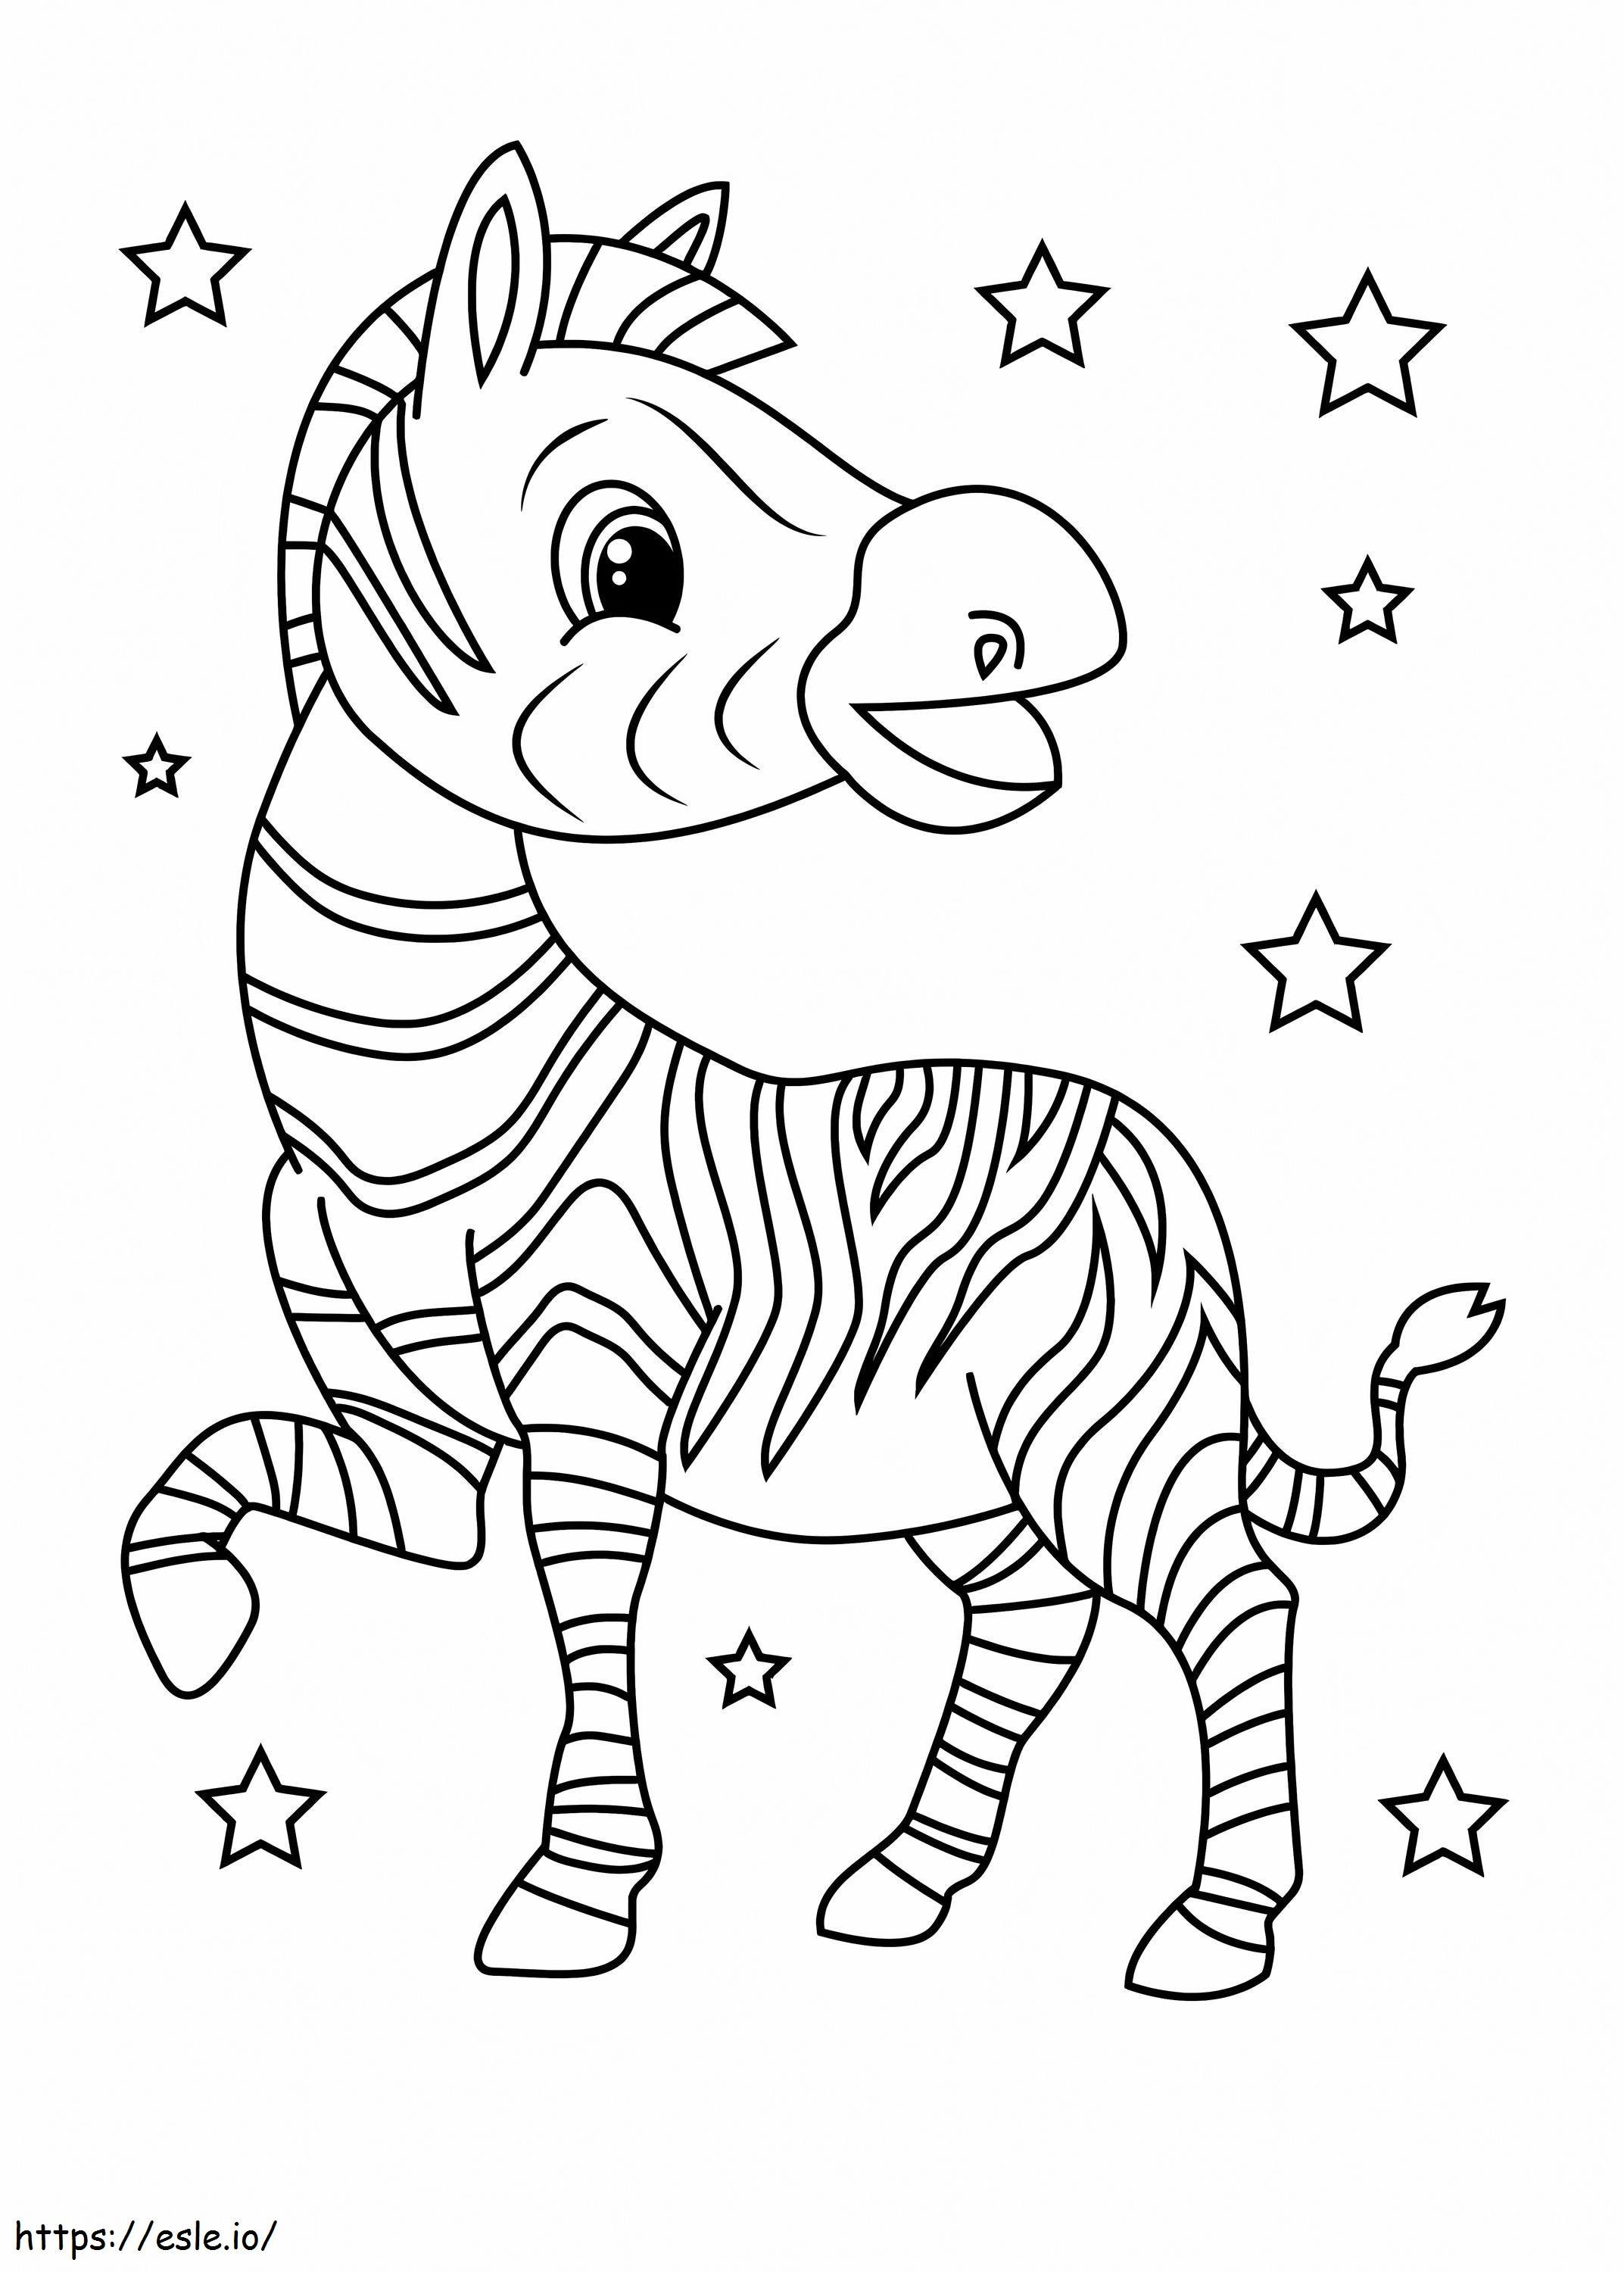 Zebră distractivă cu stea de colorat